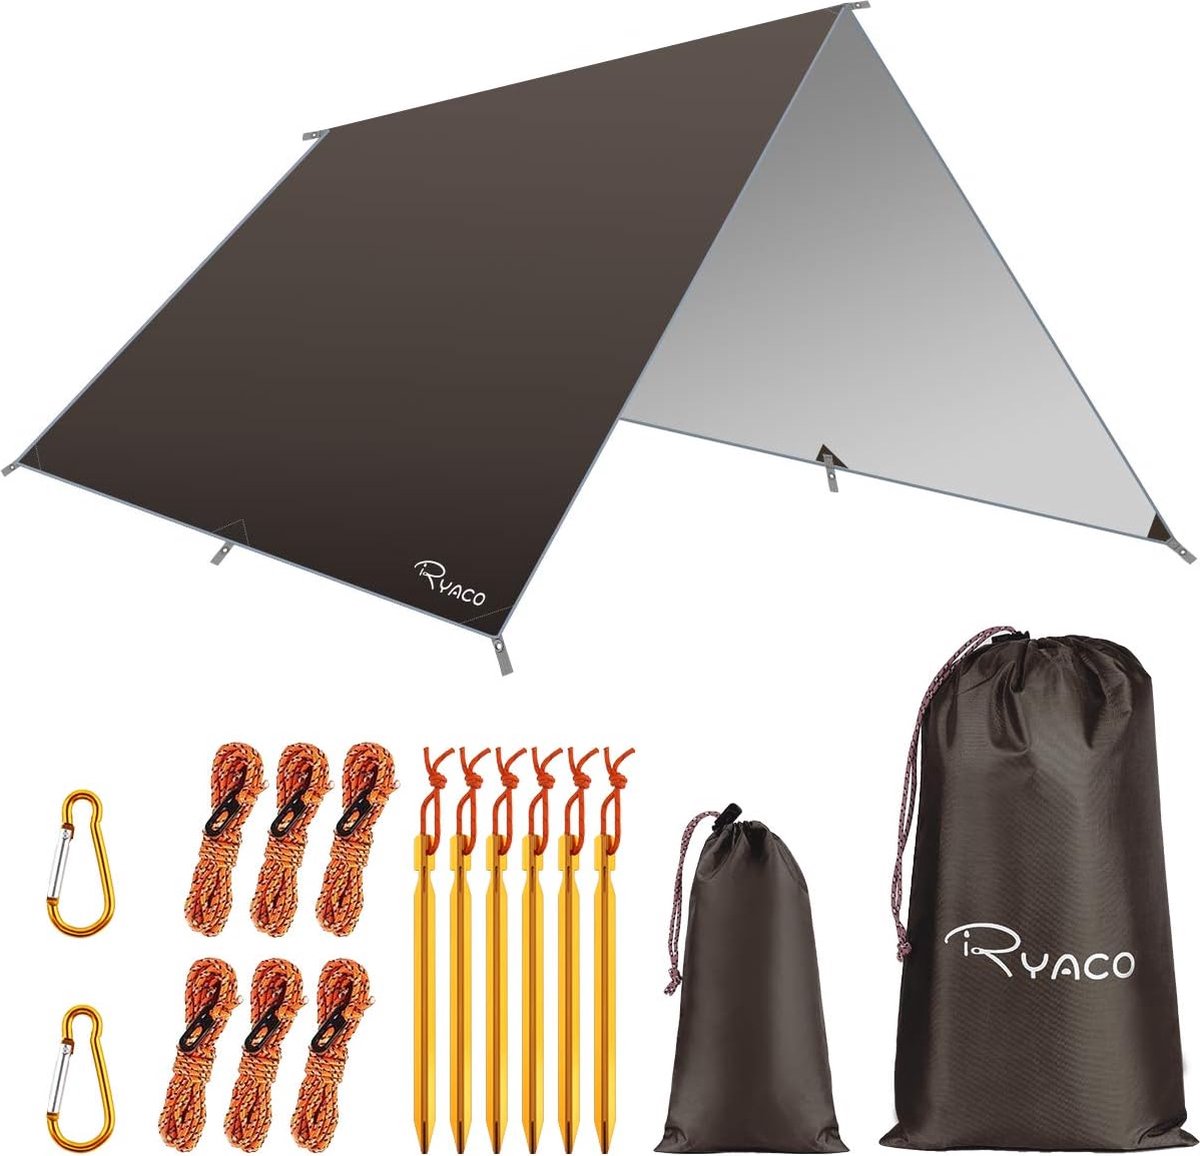 Camping tentzeil, 3 m x 3 m, waterdicht, voor hangmat, met 6 haringen en 6 touwen, anti-uv-regen, zonbescherming, licht, compact grondzeil, picknickdeken, hammock, voor buiten, camping, herbruikbaar